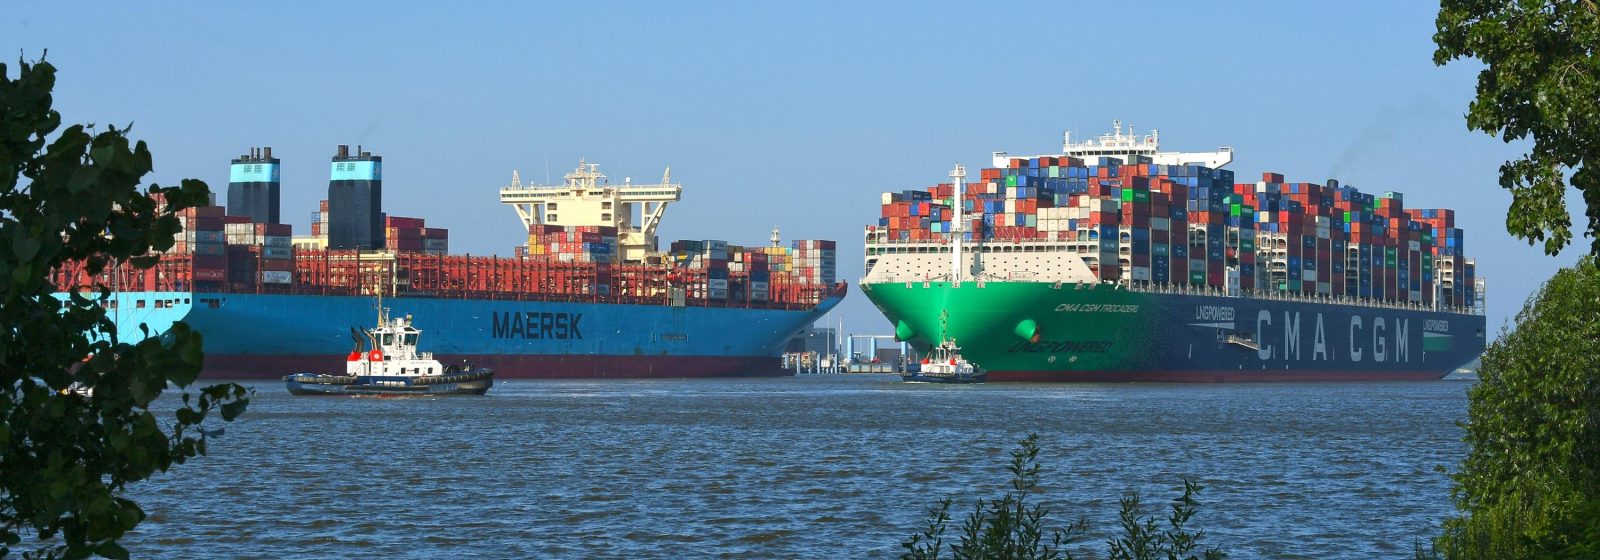 Twee megamaxschepen uit de trade tussen China en Noord-Europa op de Elbe